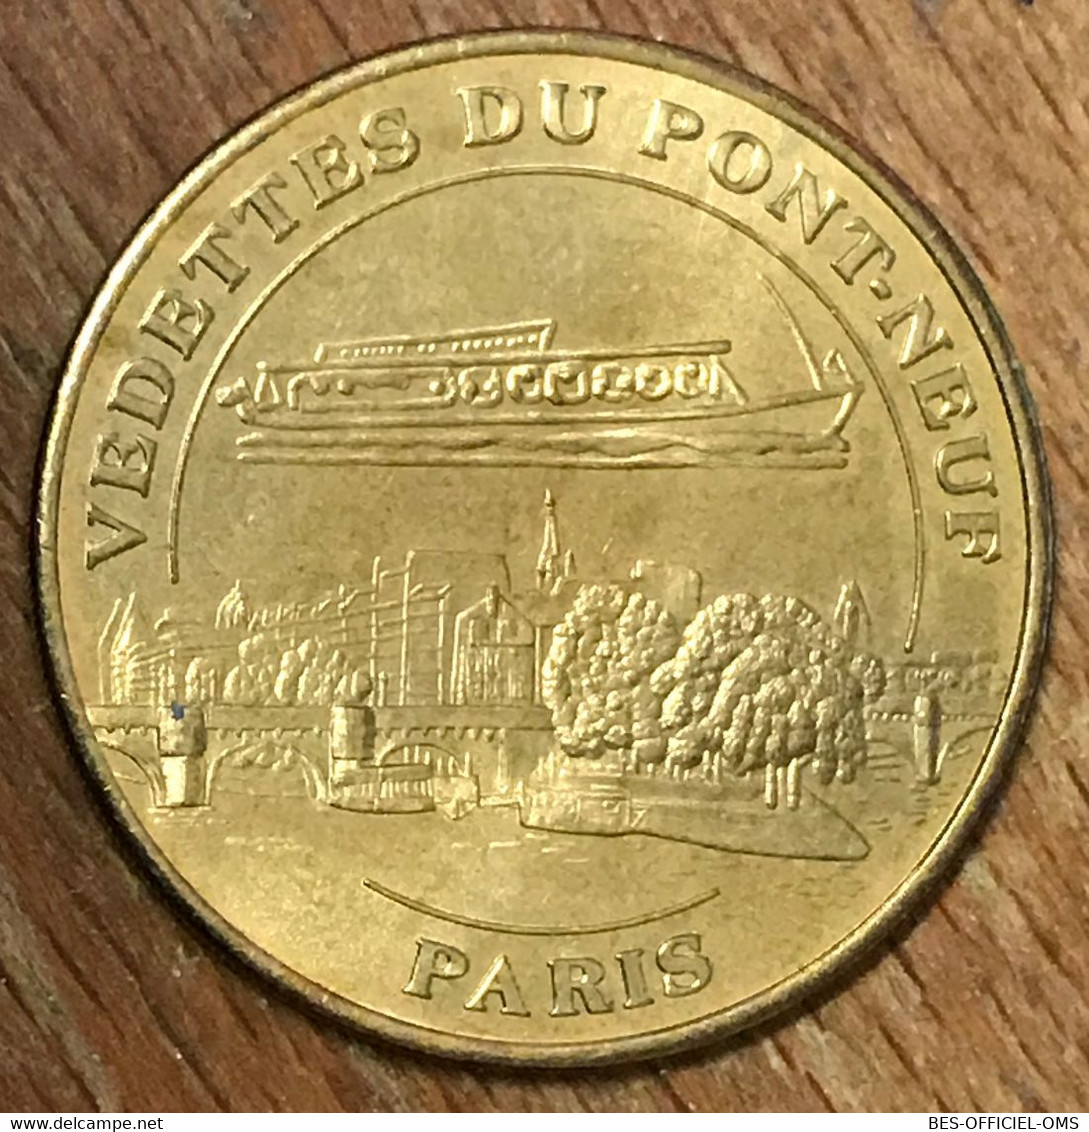 75001 PARIS VEDETTES DU PONT NEUF N°1 MDP 2004 MÉDAILLE SOUVENIR MONNAIE DE PARIS JETON TOURISTIQUE TOKEN MEDALS COINS - 2004